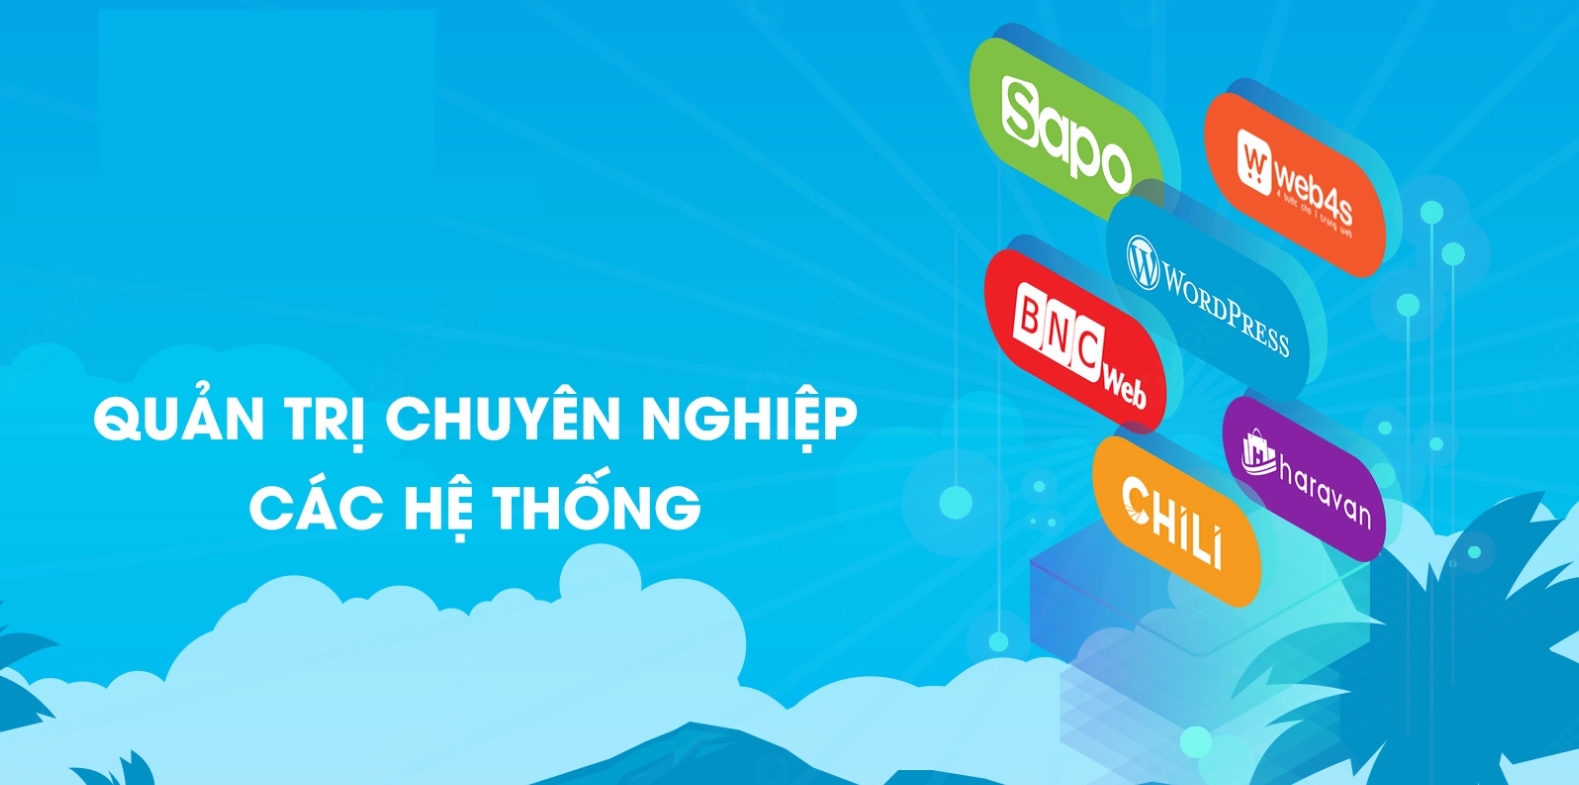 Quản trị website uy tín chuyên nghiệp tại Phan Rang Ninh Thuận